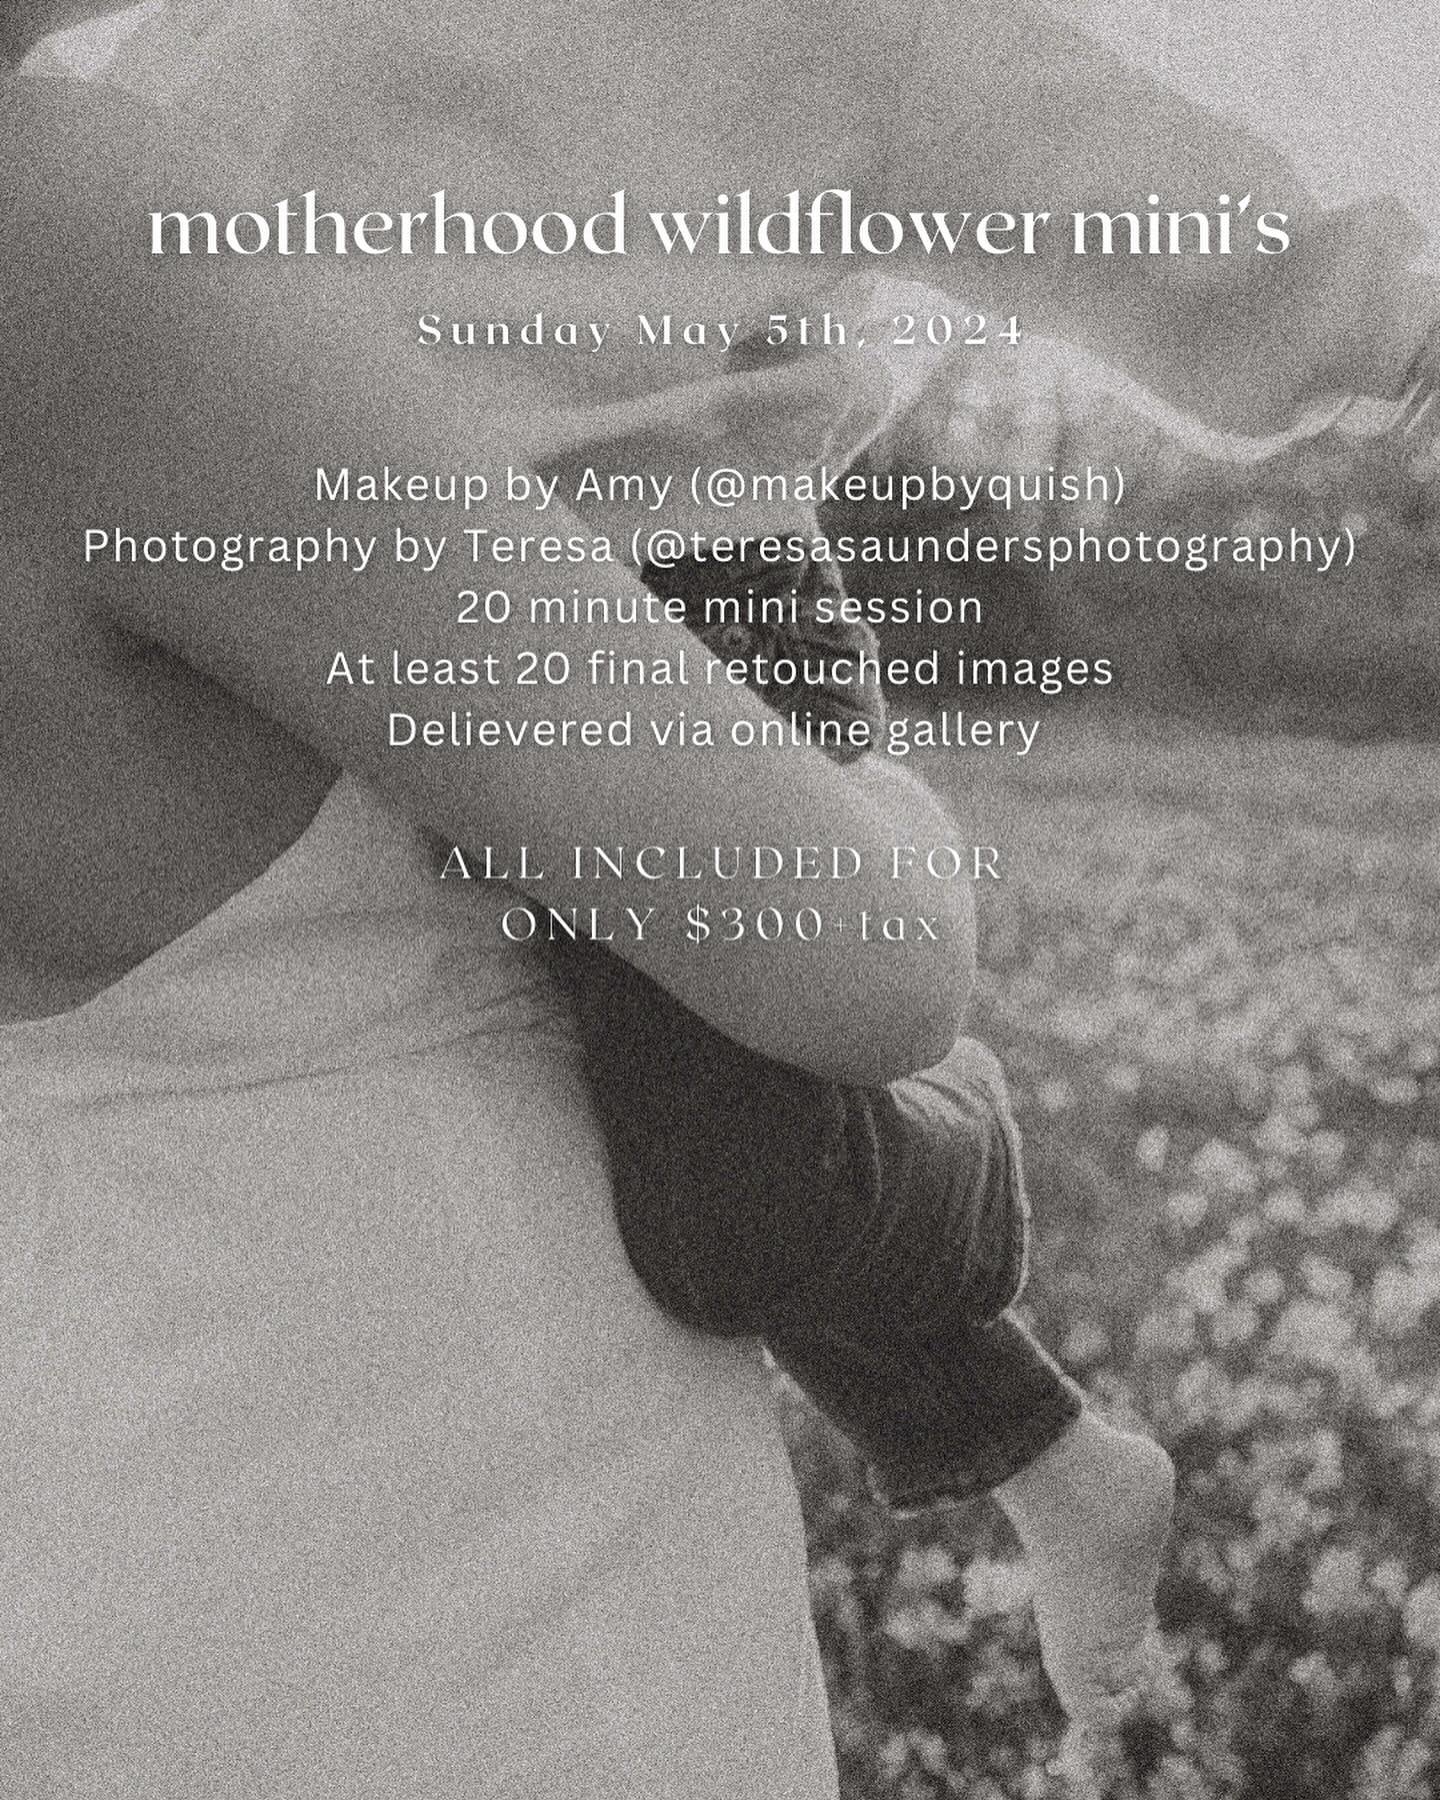 Motherhood Mini&rsquo;s now open for booking! 

#mothersdayphotoshoot #mothersdaygift #celebratemotherhood #yyjmakeup #yyjphotographer #yyjphotoshoot #yyjmothersdaygift